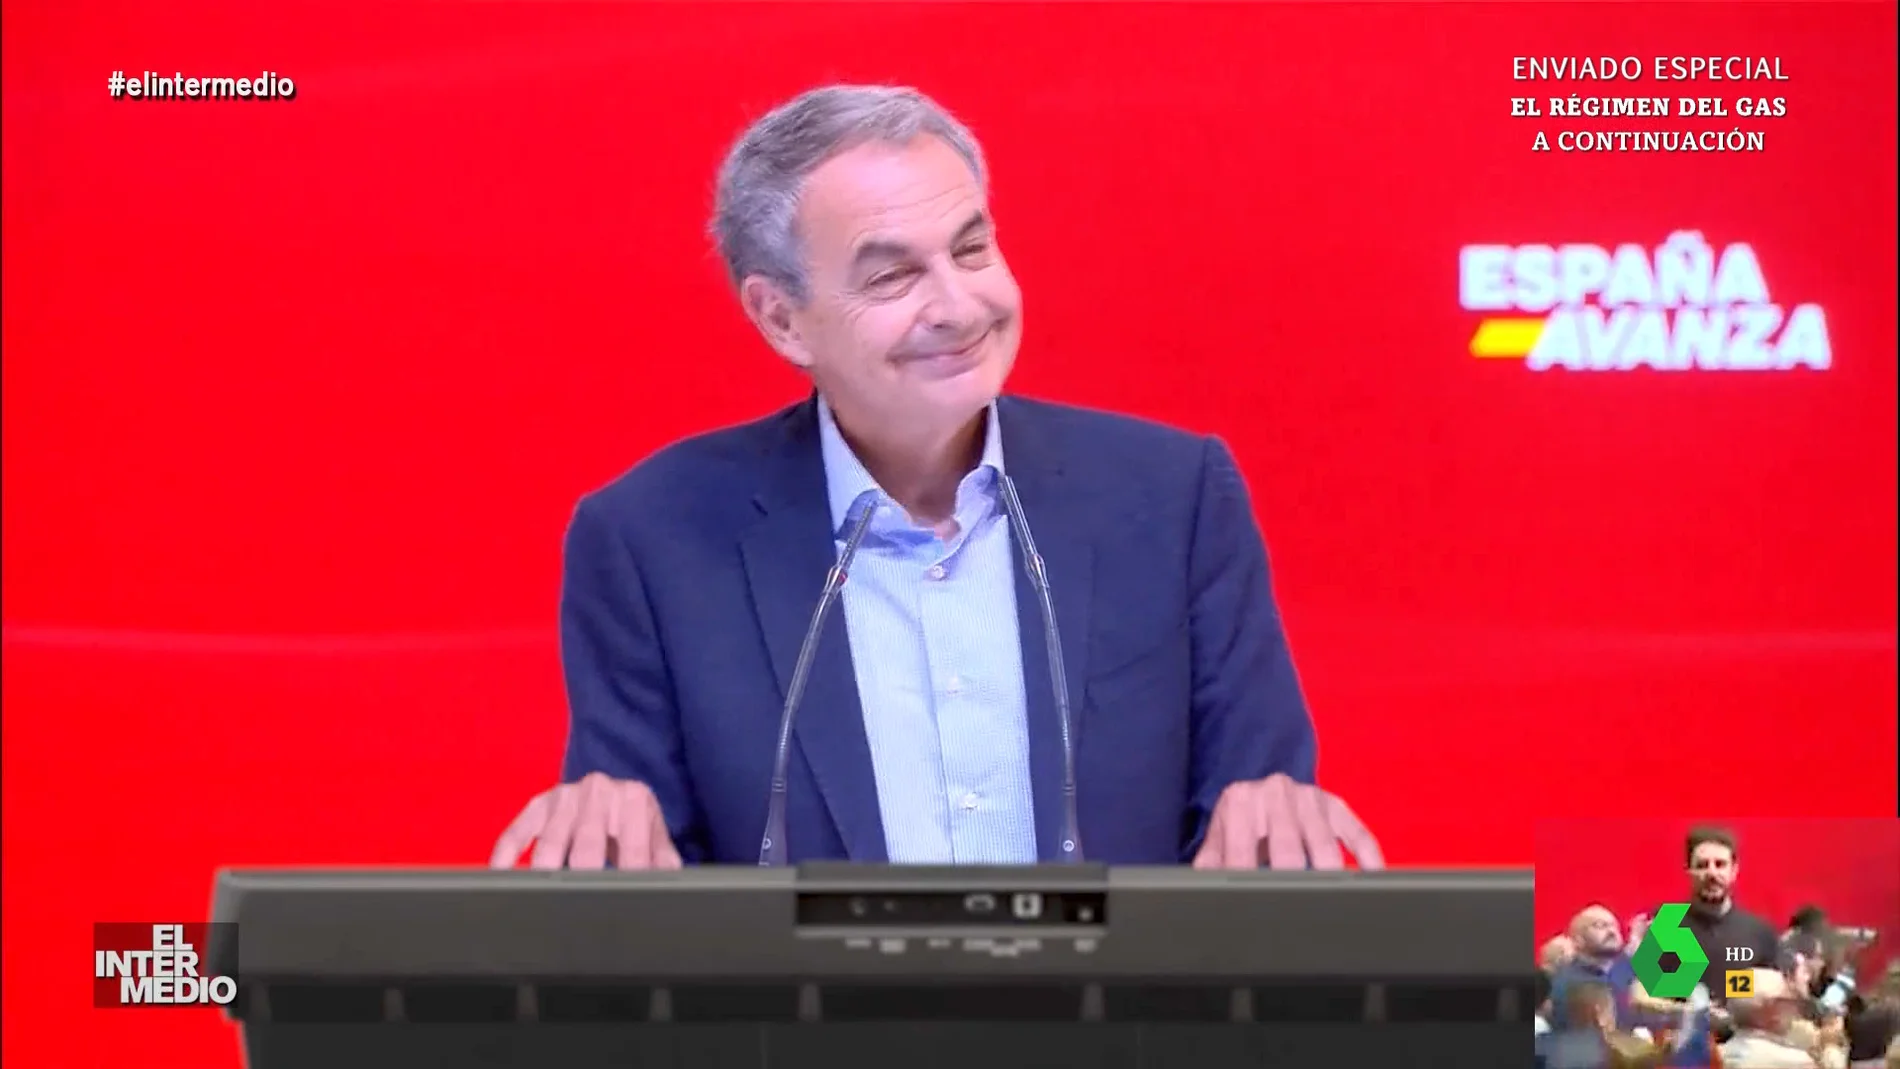 Vídeo manipulado - Zapatero interpreta una canción de Van Halen al piano para amenizar un acto del PSOE